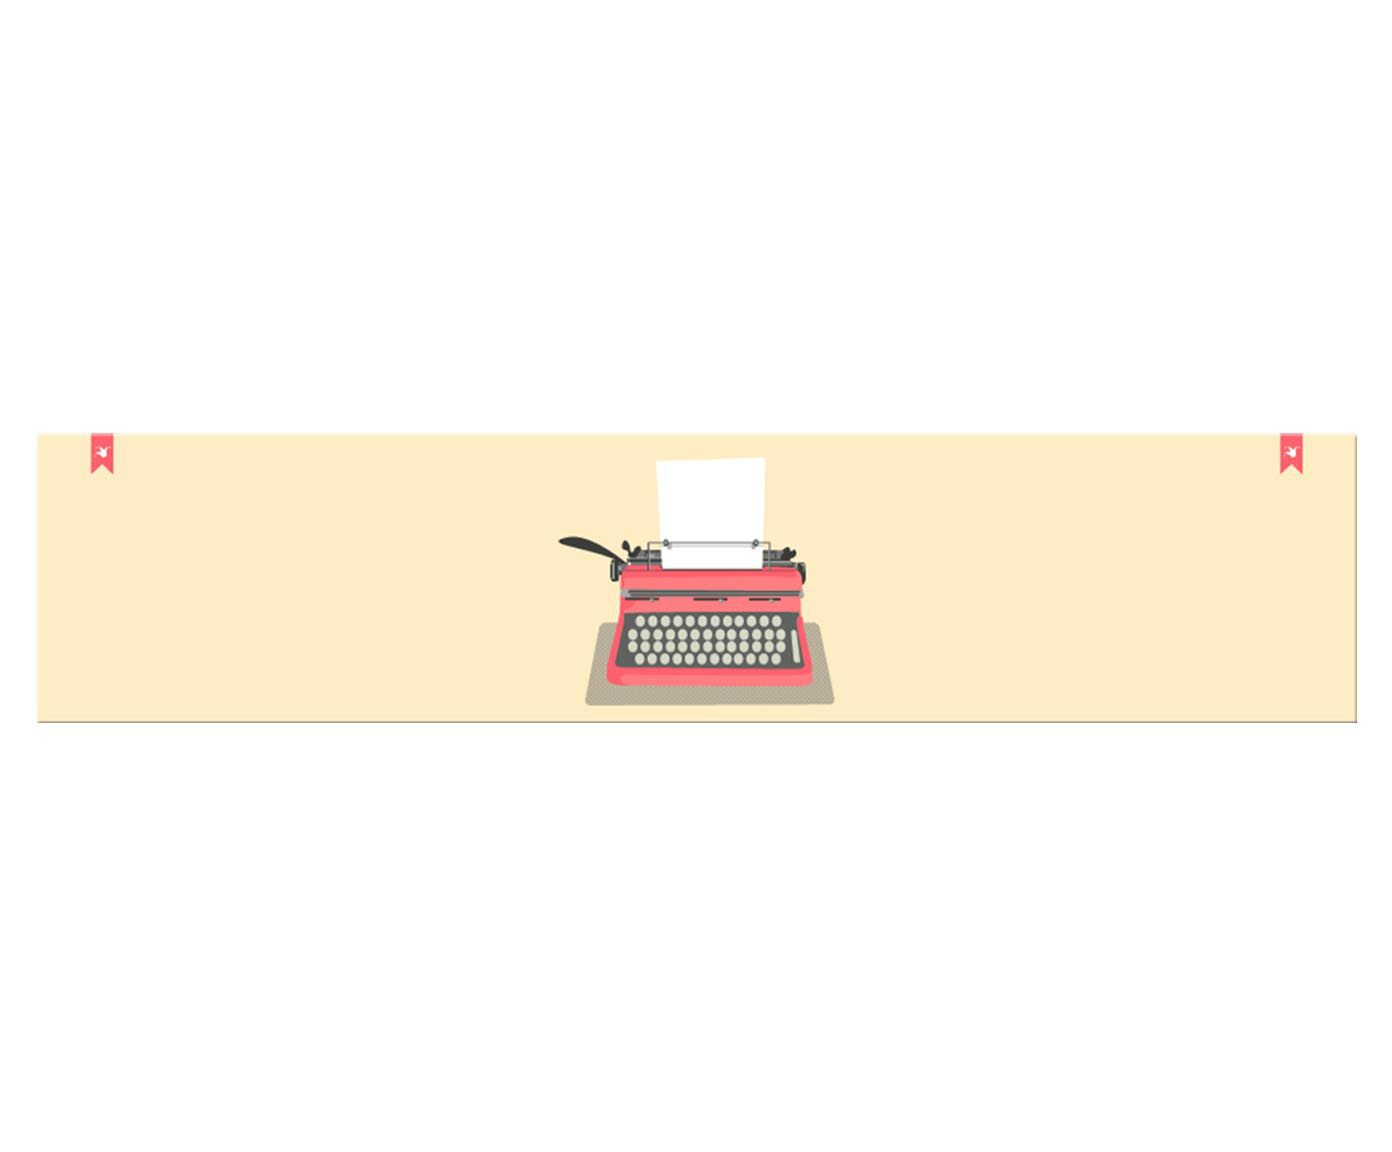 Passadeira máquina de escrever | Westwing.com.br